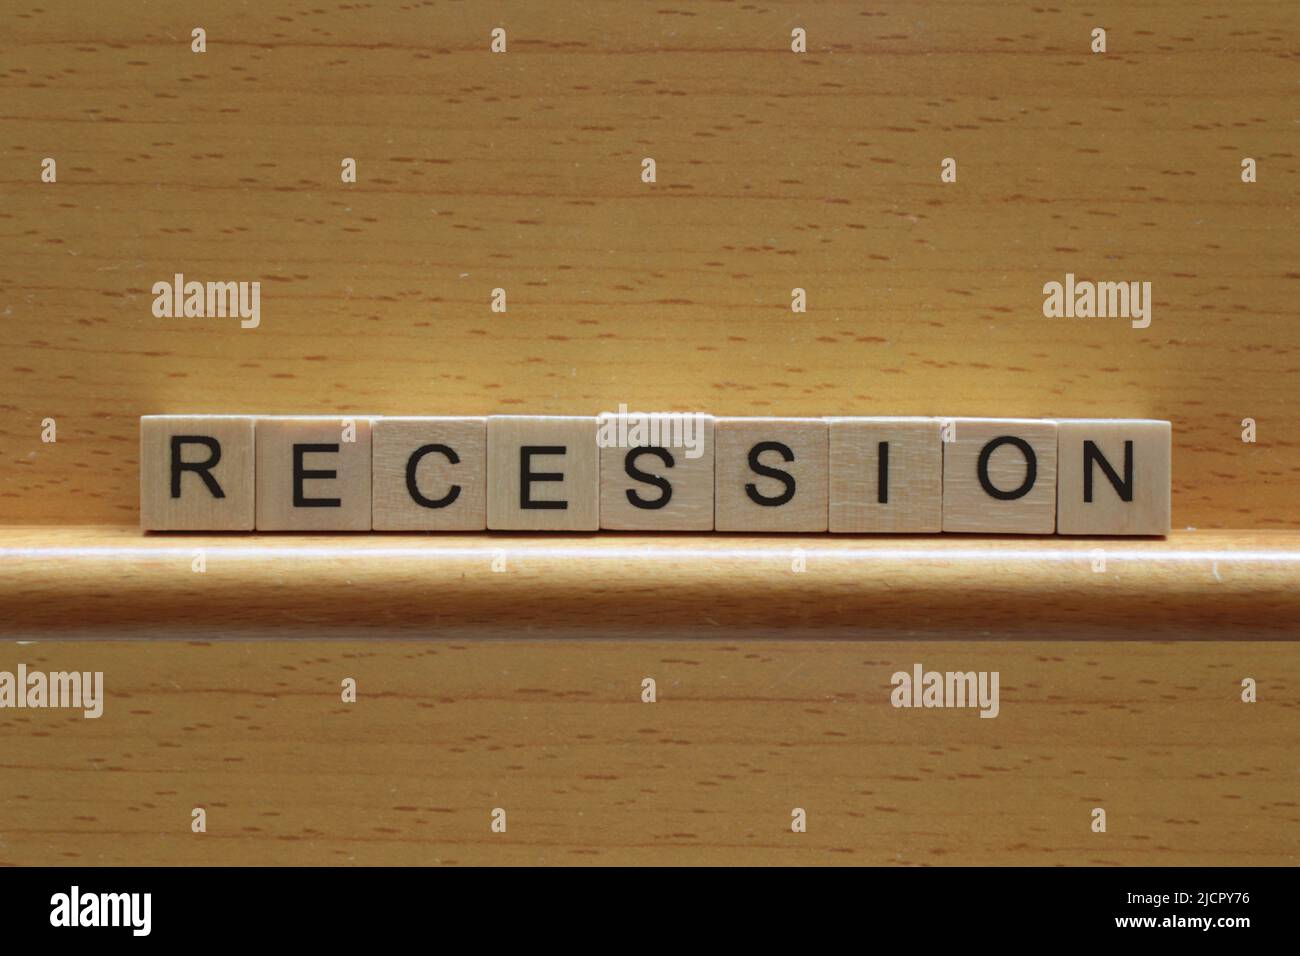 Concepto de recesión, la palabra recesión en bloques de madera sobre un fondo de madera con espacio de copia Foto de stock